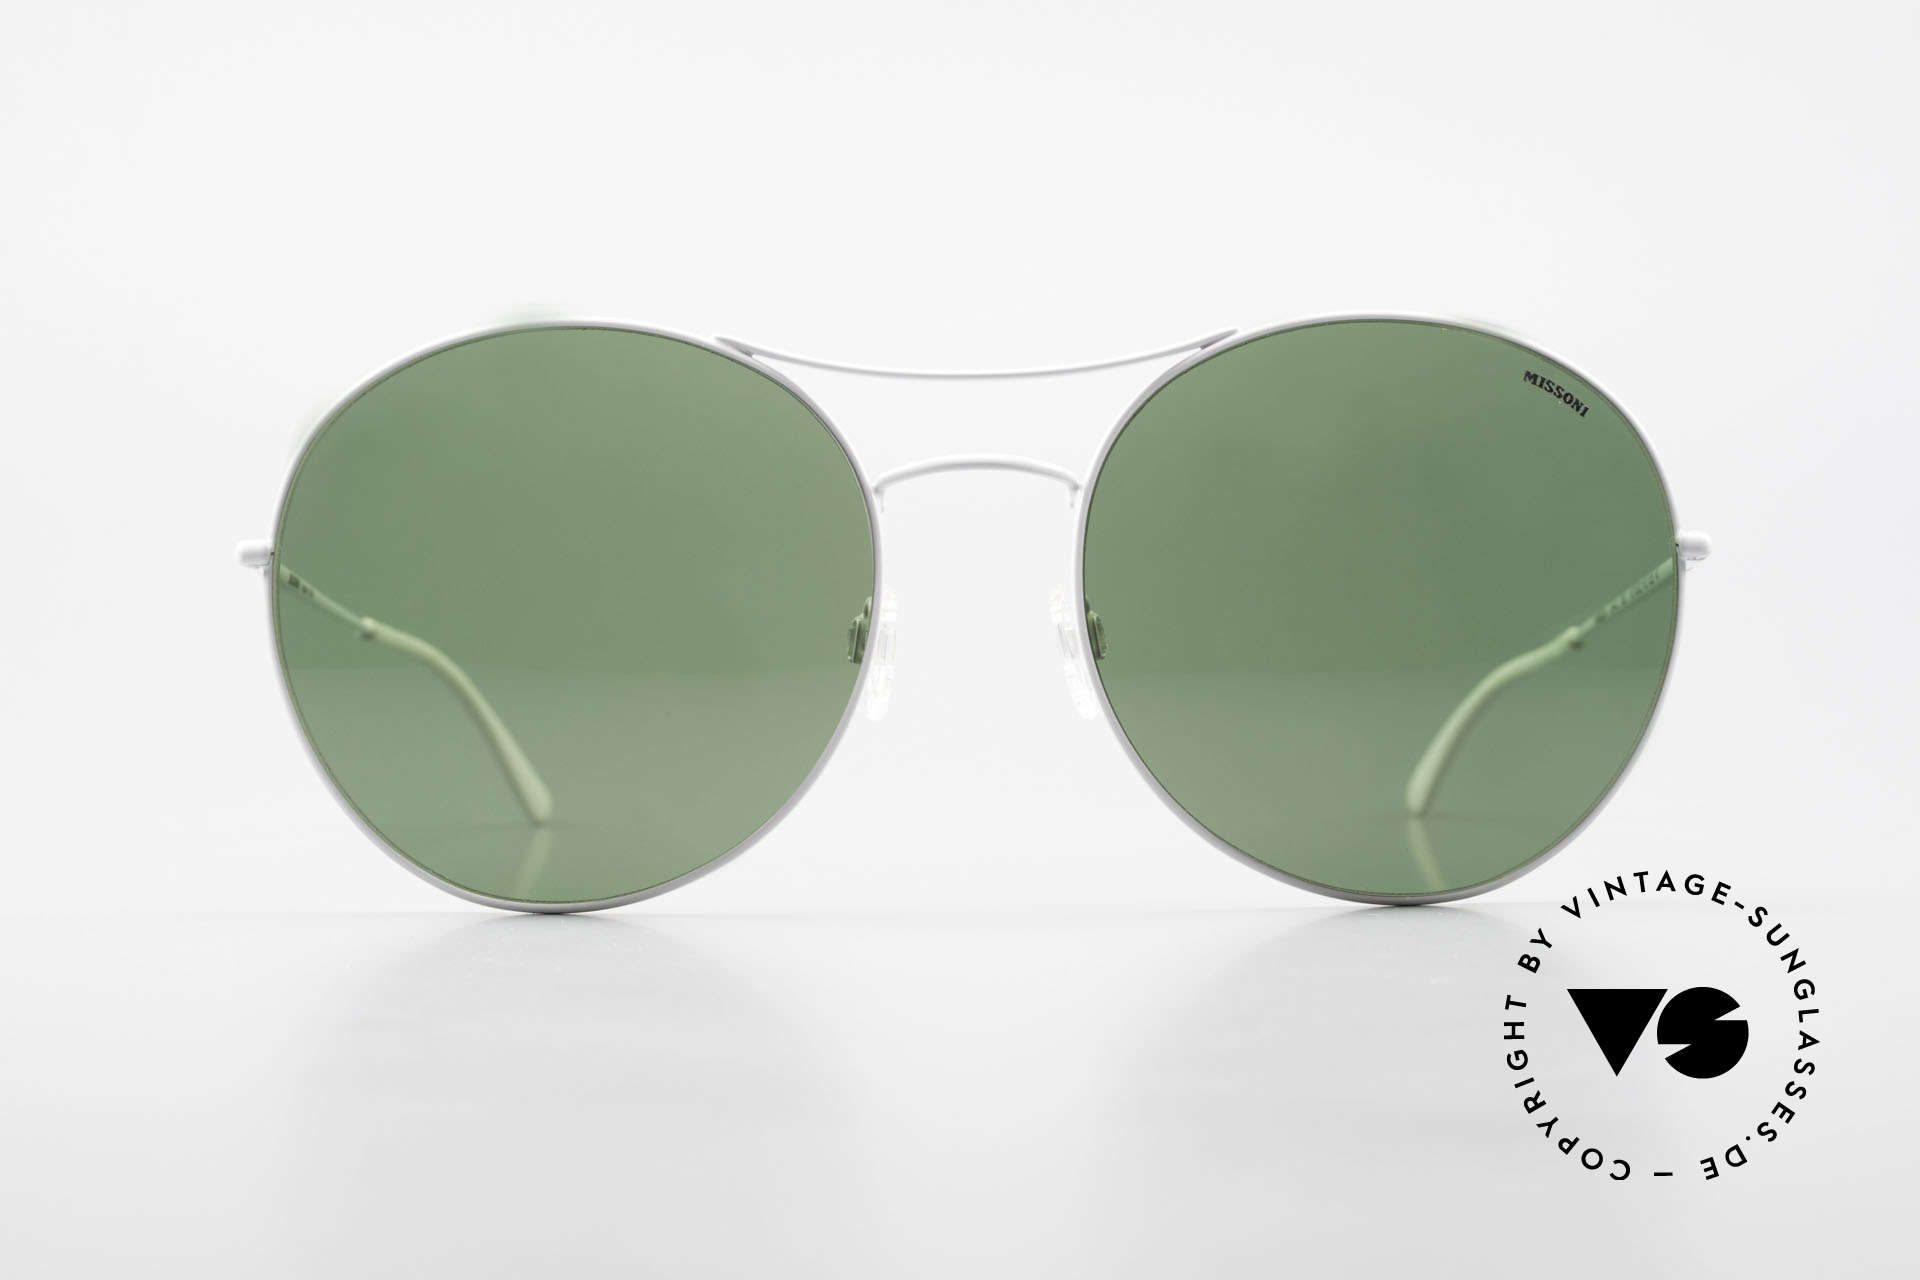 Missoni 0440 Oversized Aviator Sunglasses, 90s oversized aviator sunglasses, 64mm frame height, Made for Men and Women